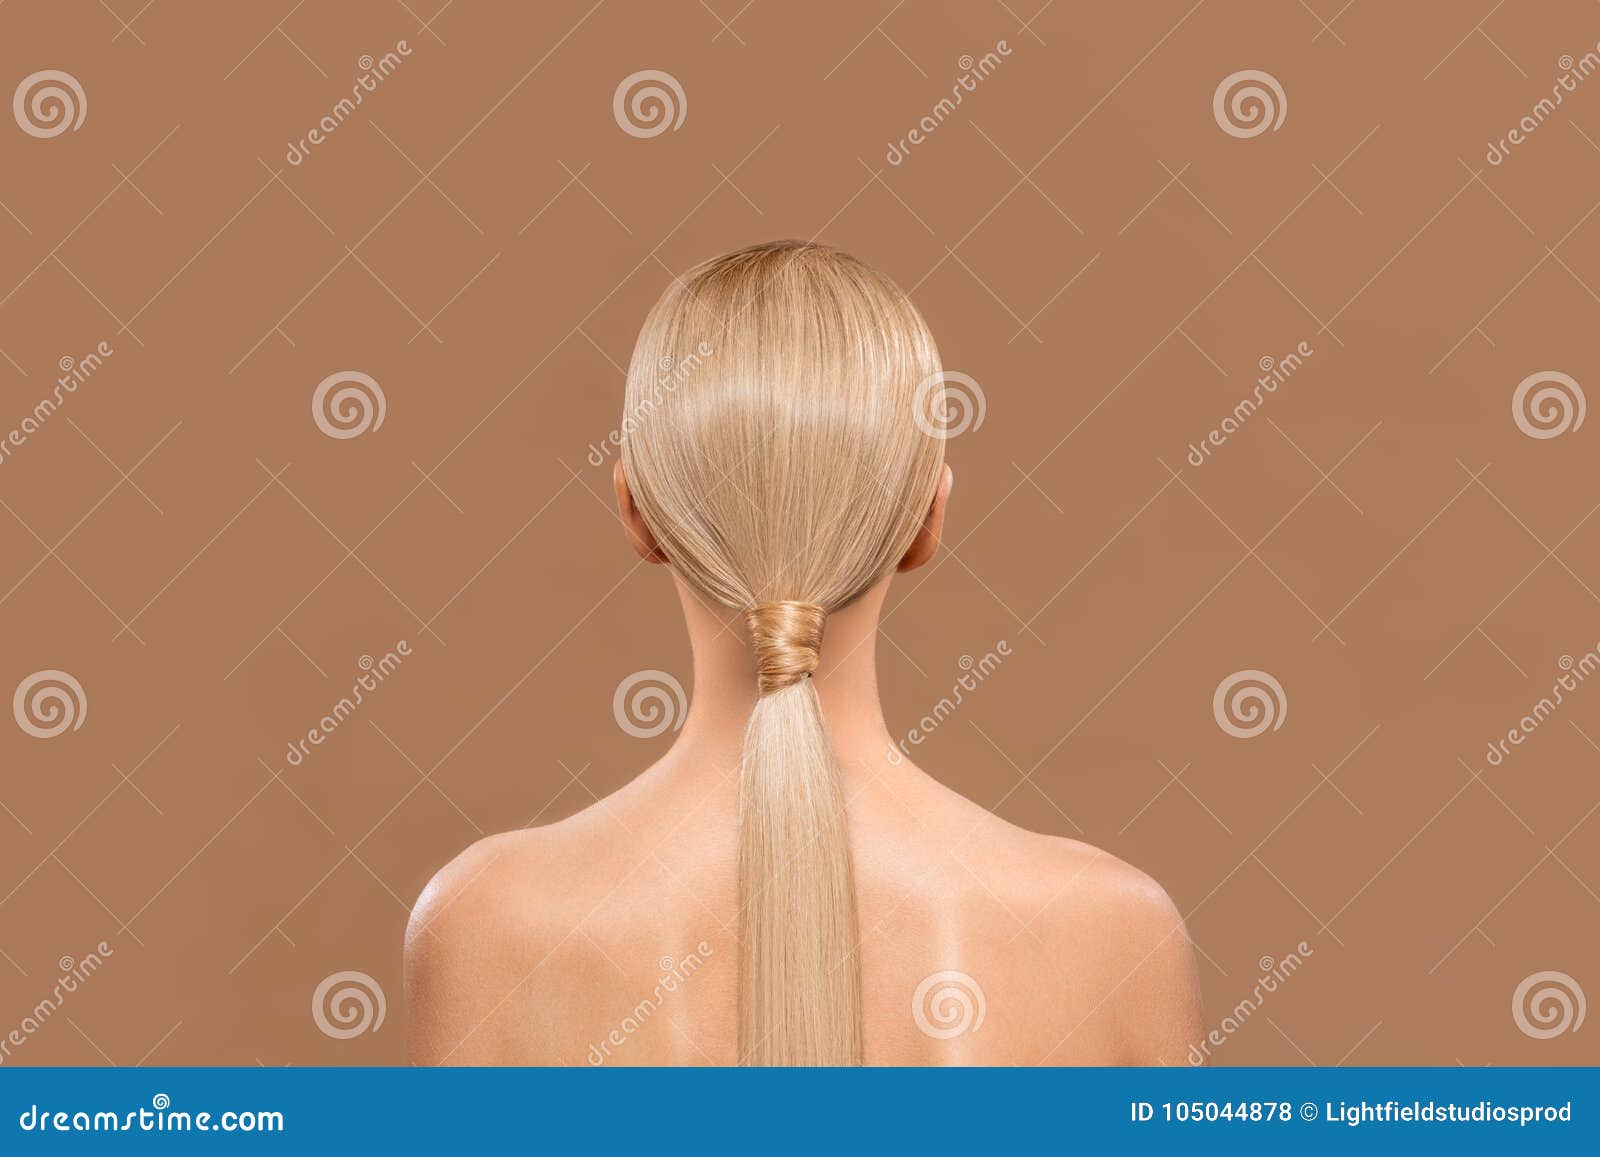 1. Long blonde hair girl - wide 3